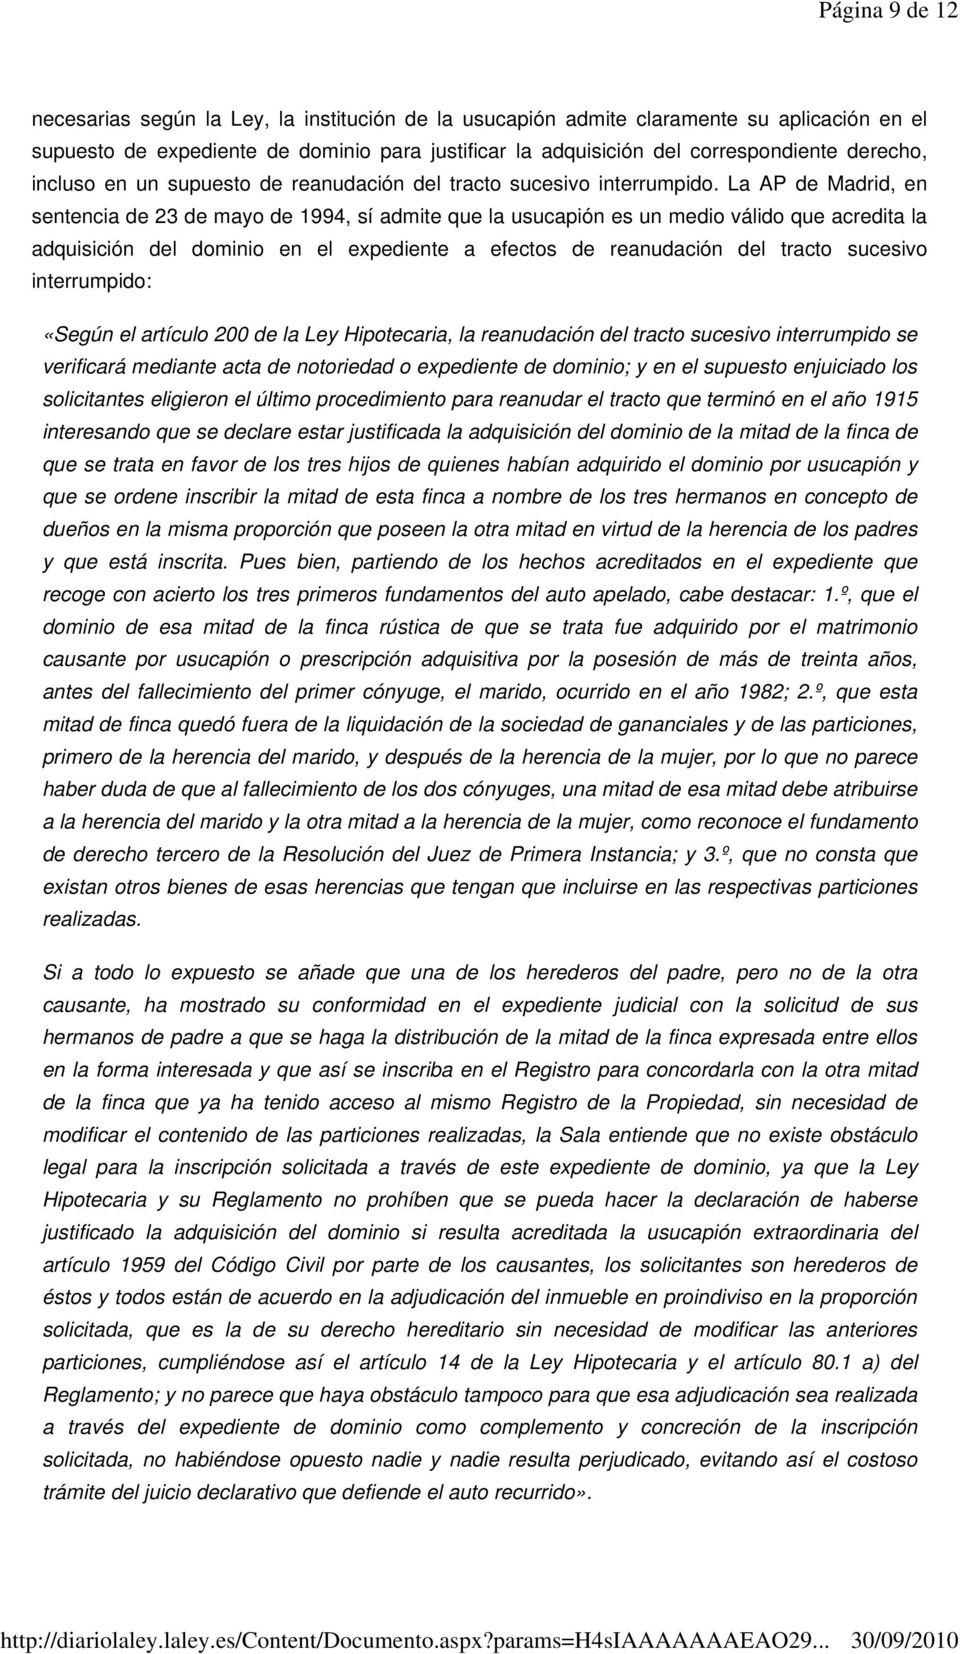 La AP de Madrid, en sentencia de 23 de mayo de 1994, sí admite que la usucapión es un medio válido que acredita la adquisición del dominio en el expediente a efectos de reanudación del tracto